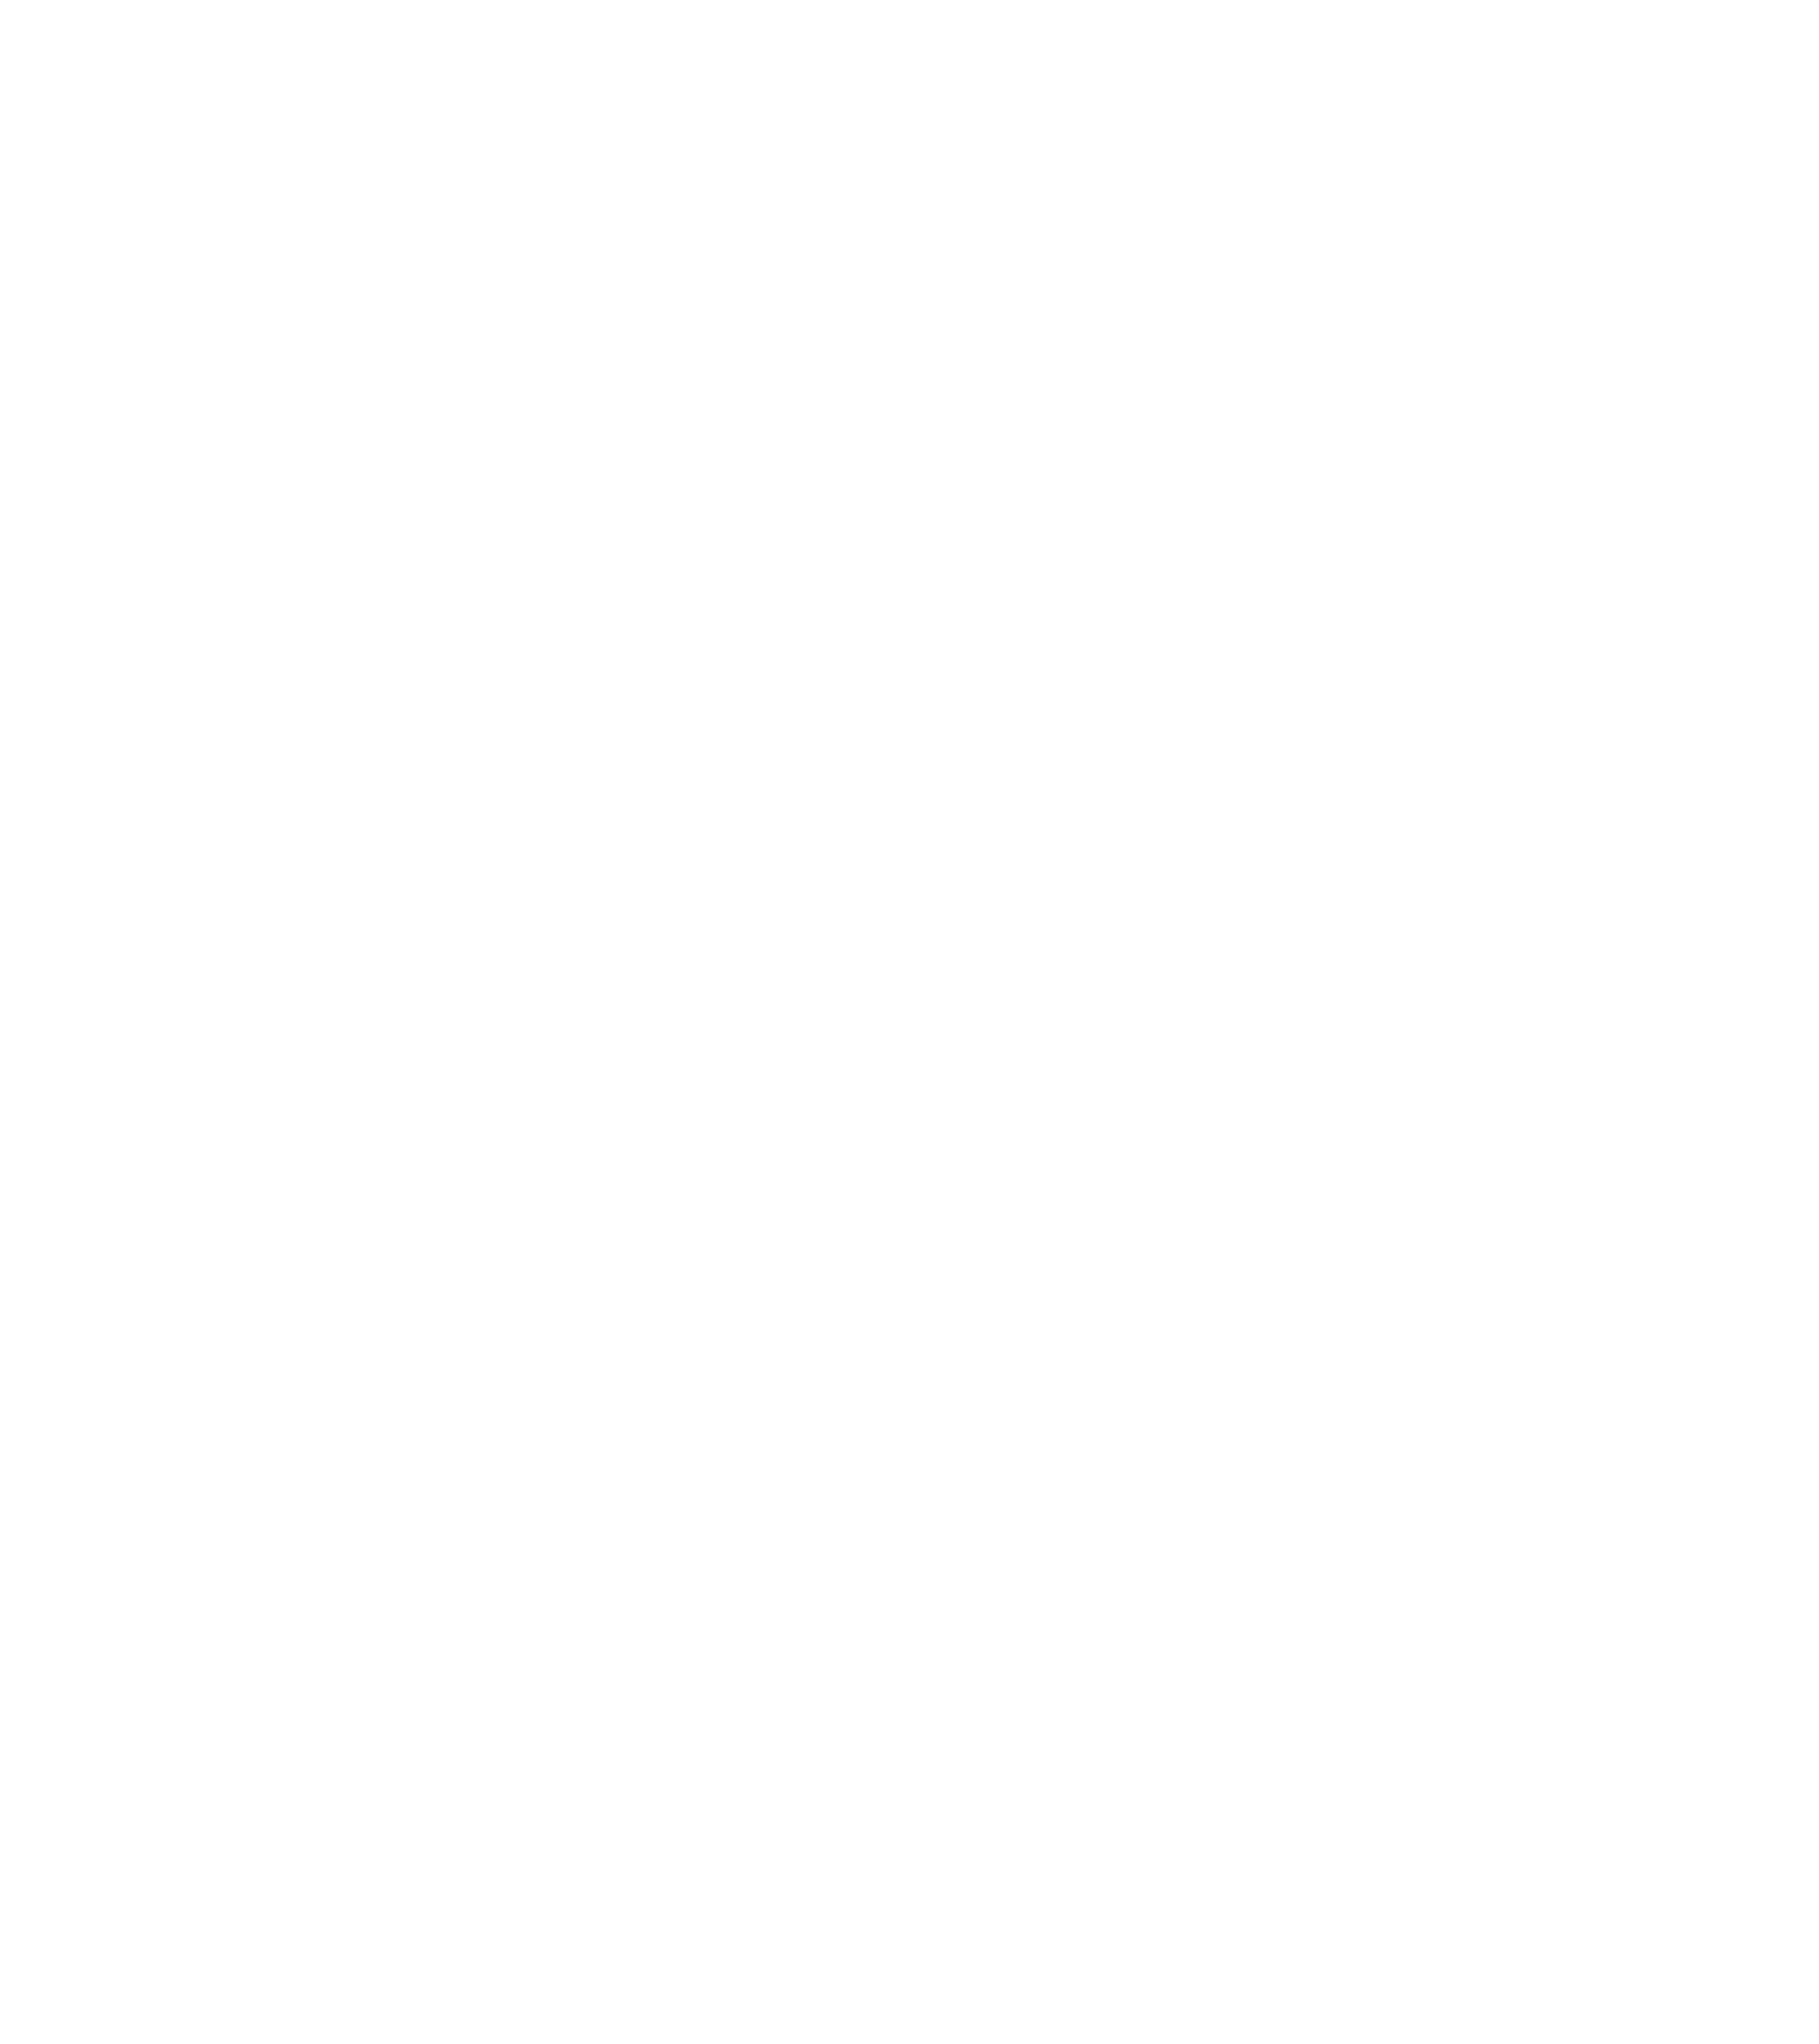 Y12 Federal Crifit Union